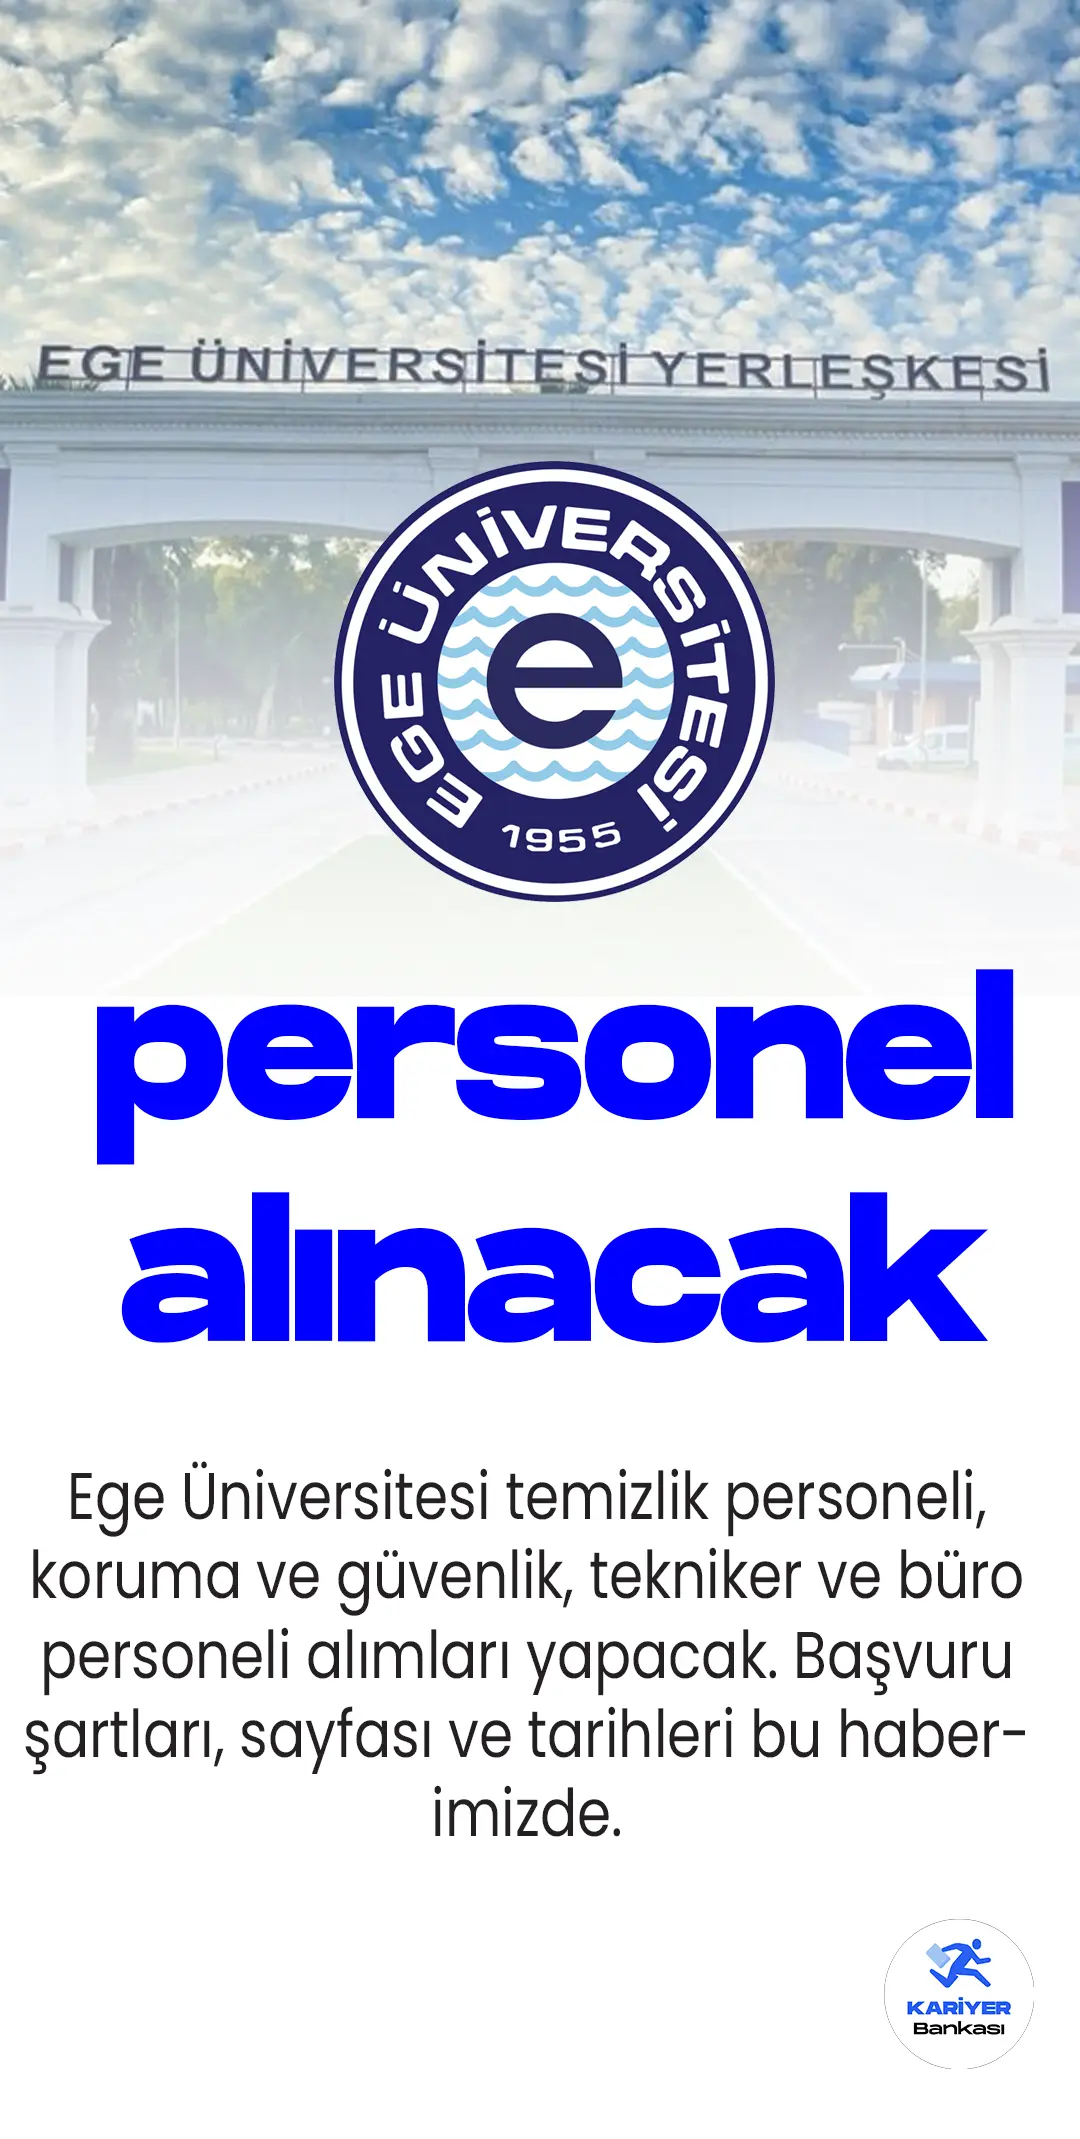 Ege Üniversitesi 77 personel alımı yapacak. Ege Üniversitesi personel alımı başvuru sayfası, şartları ve diğer detaylar bu haberimizde...